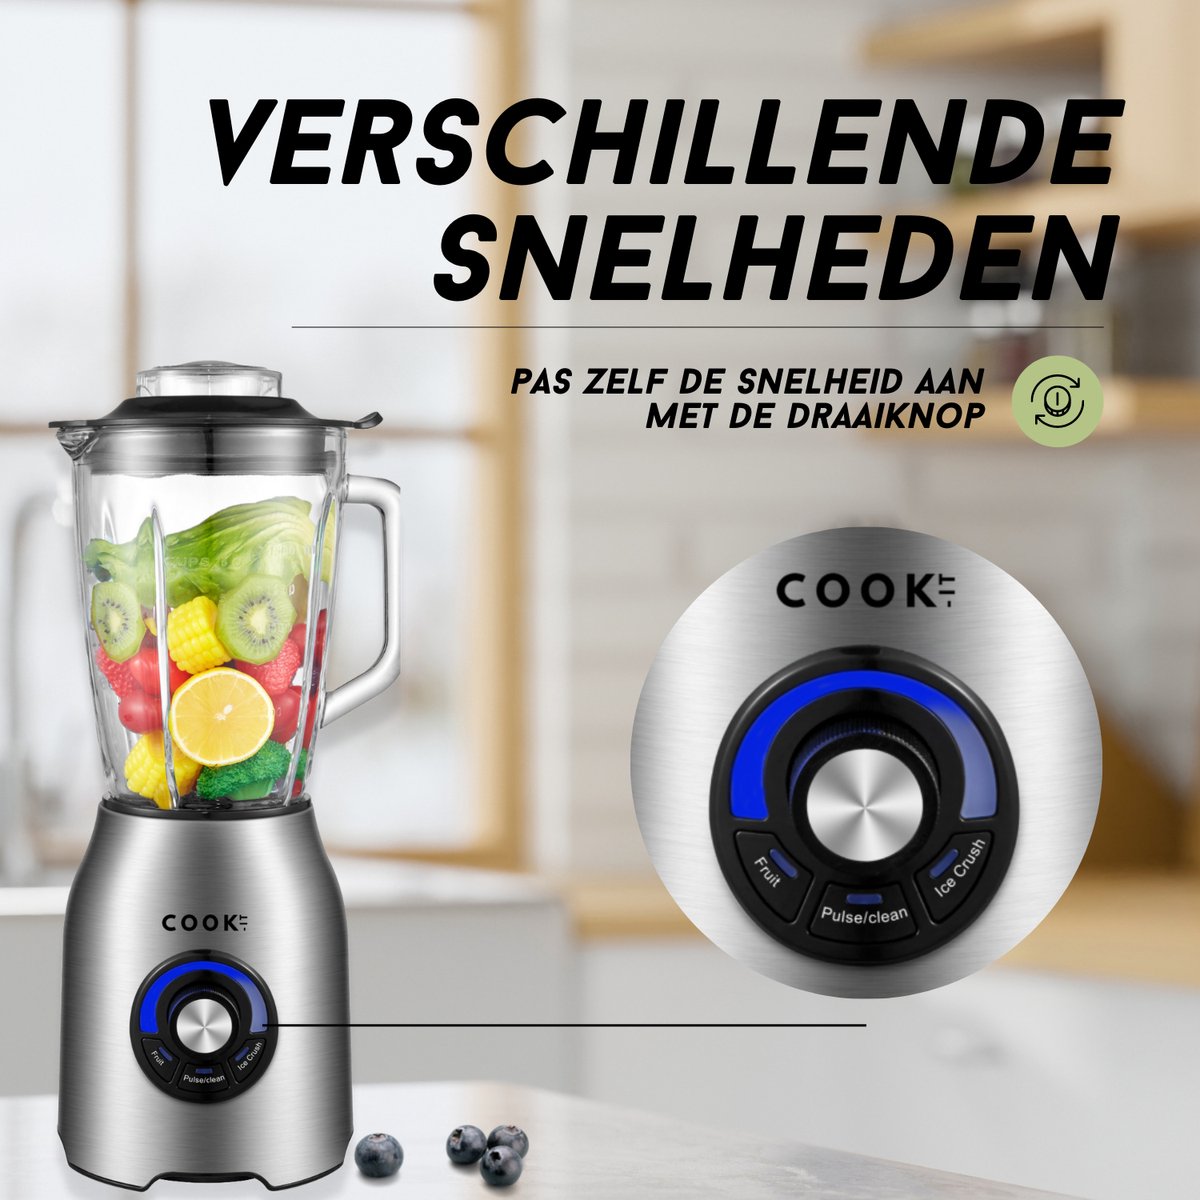 COOK-IT Power Blender - Krachtpatser voor in de keuken